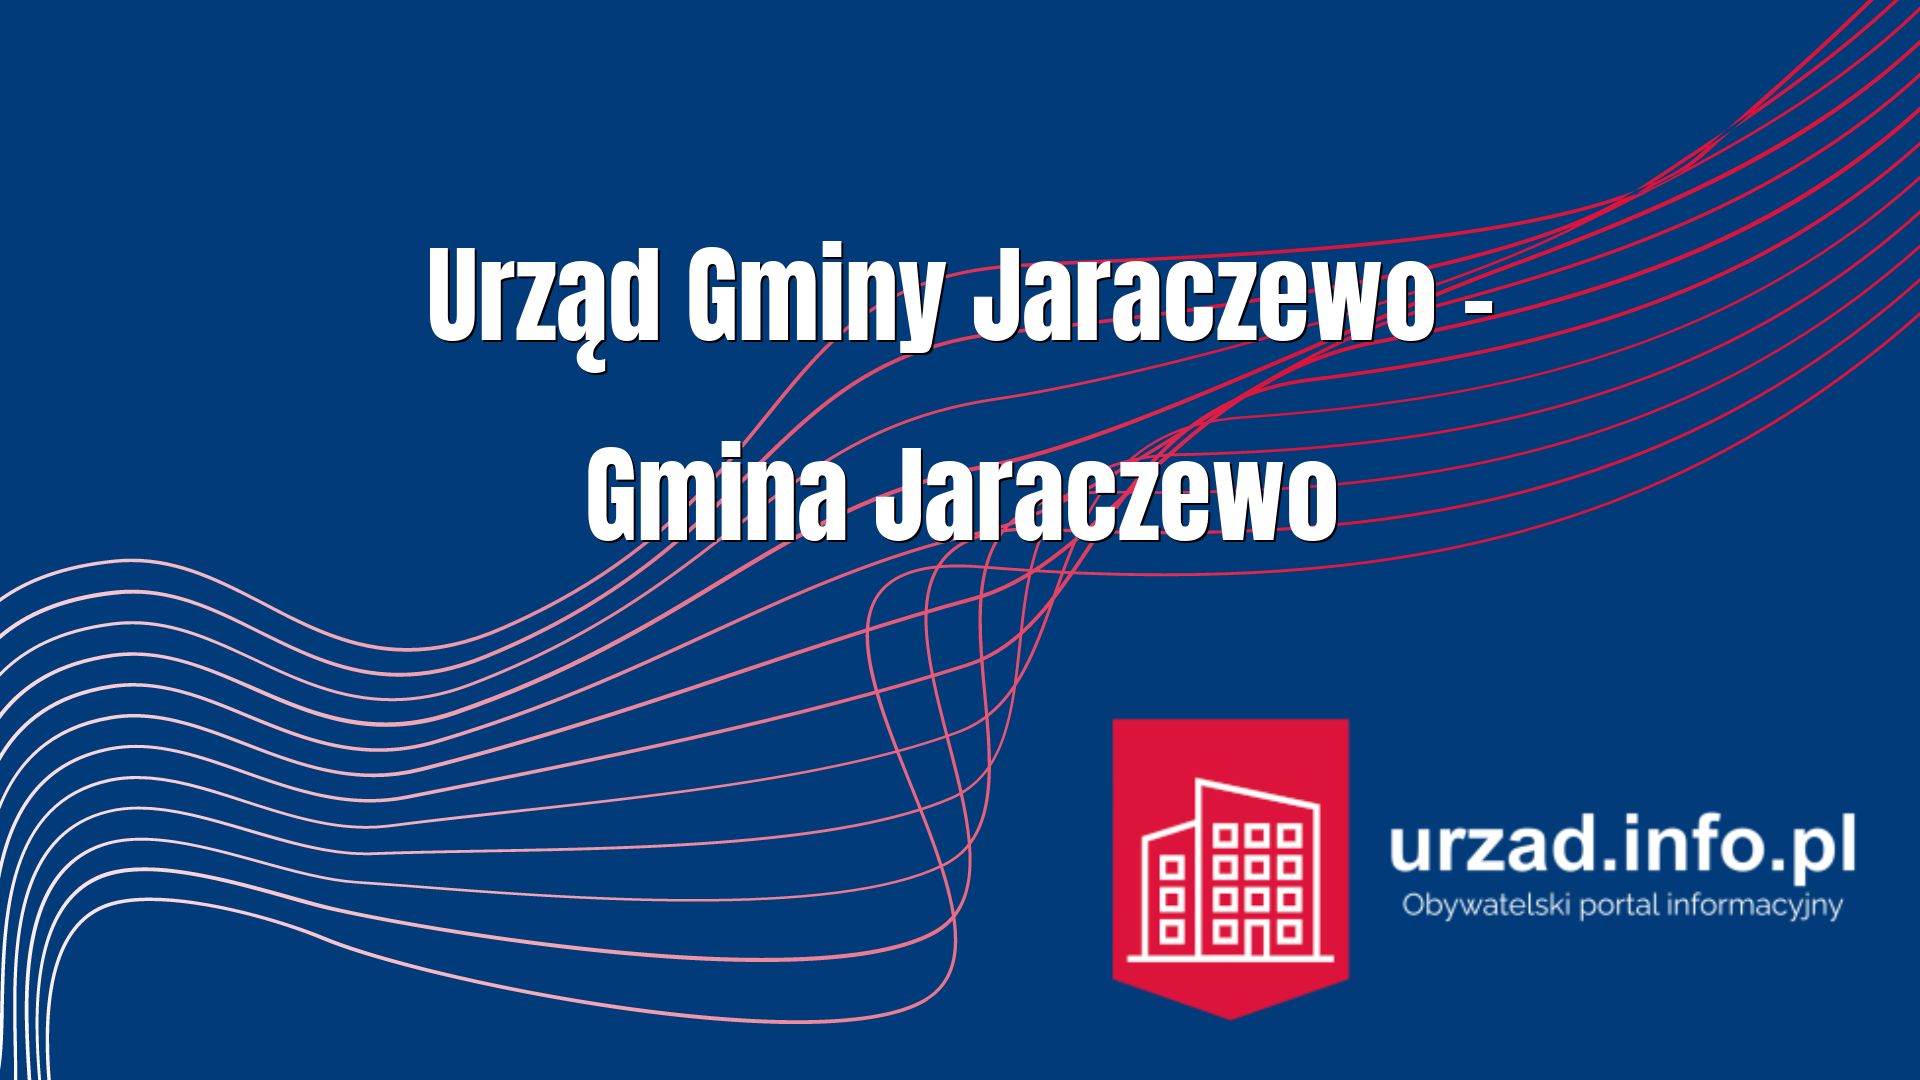 Urząd Gminy Jaraczewo – Gmina Jaraczewo